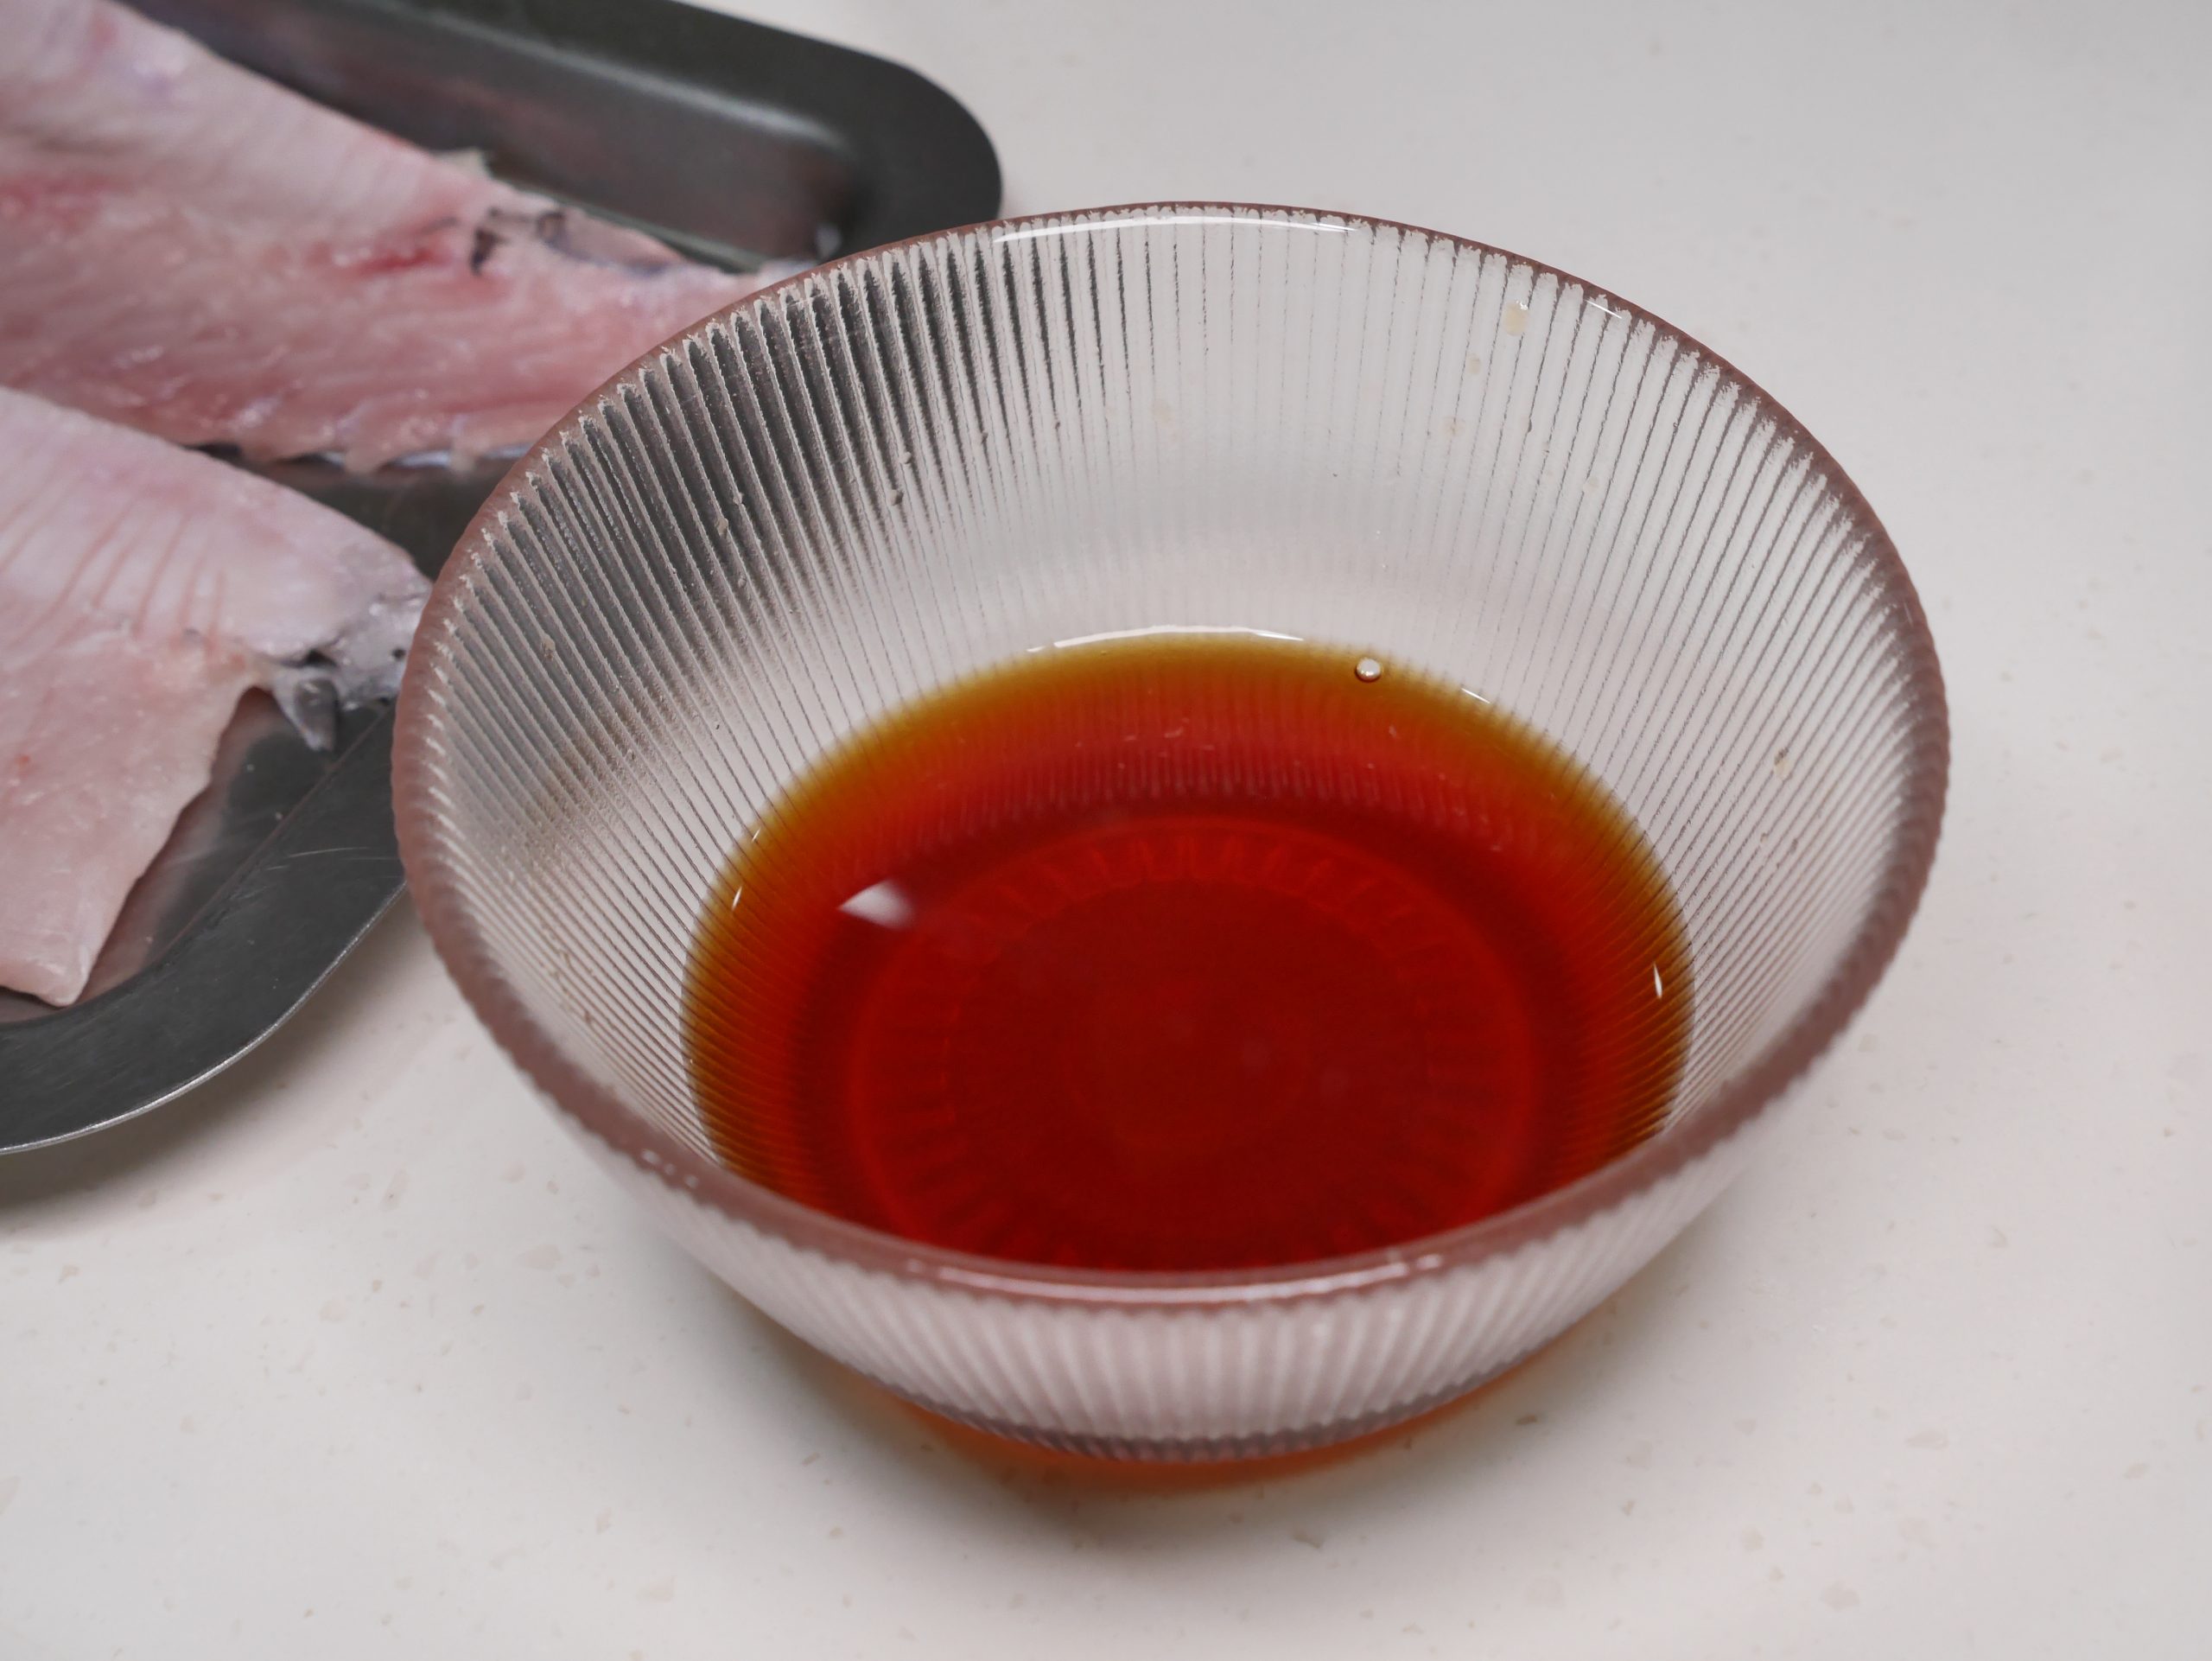 【食譜】蒲燒虱目魚 鰻魚蒲燒醬汁 四種簡單食材 輕鬆入味 @Maruko與美食有個約會